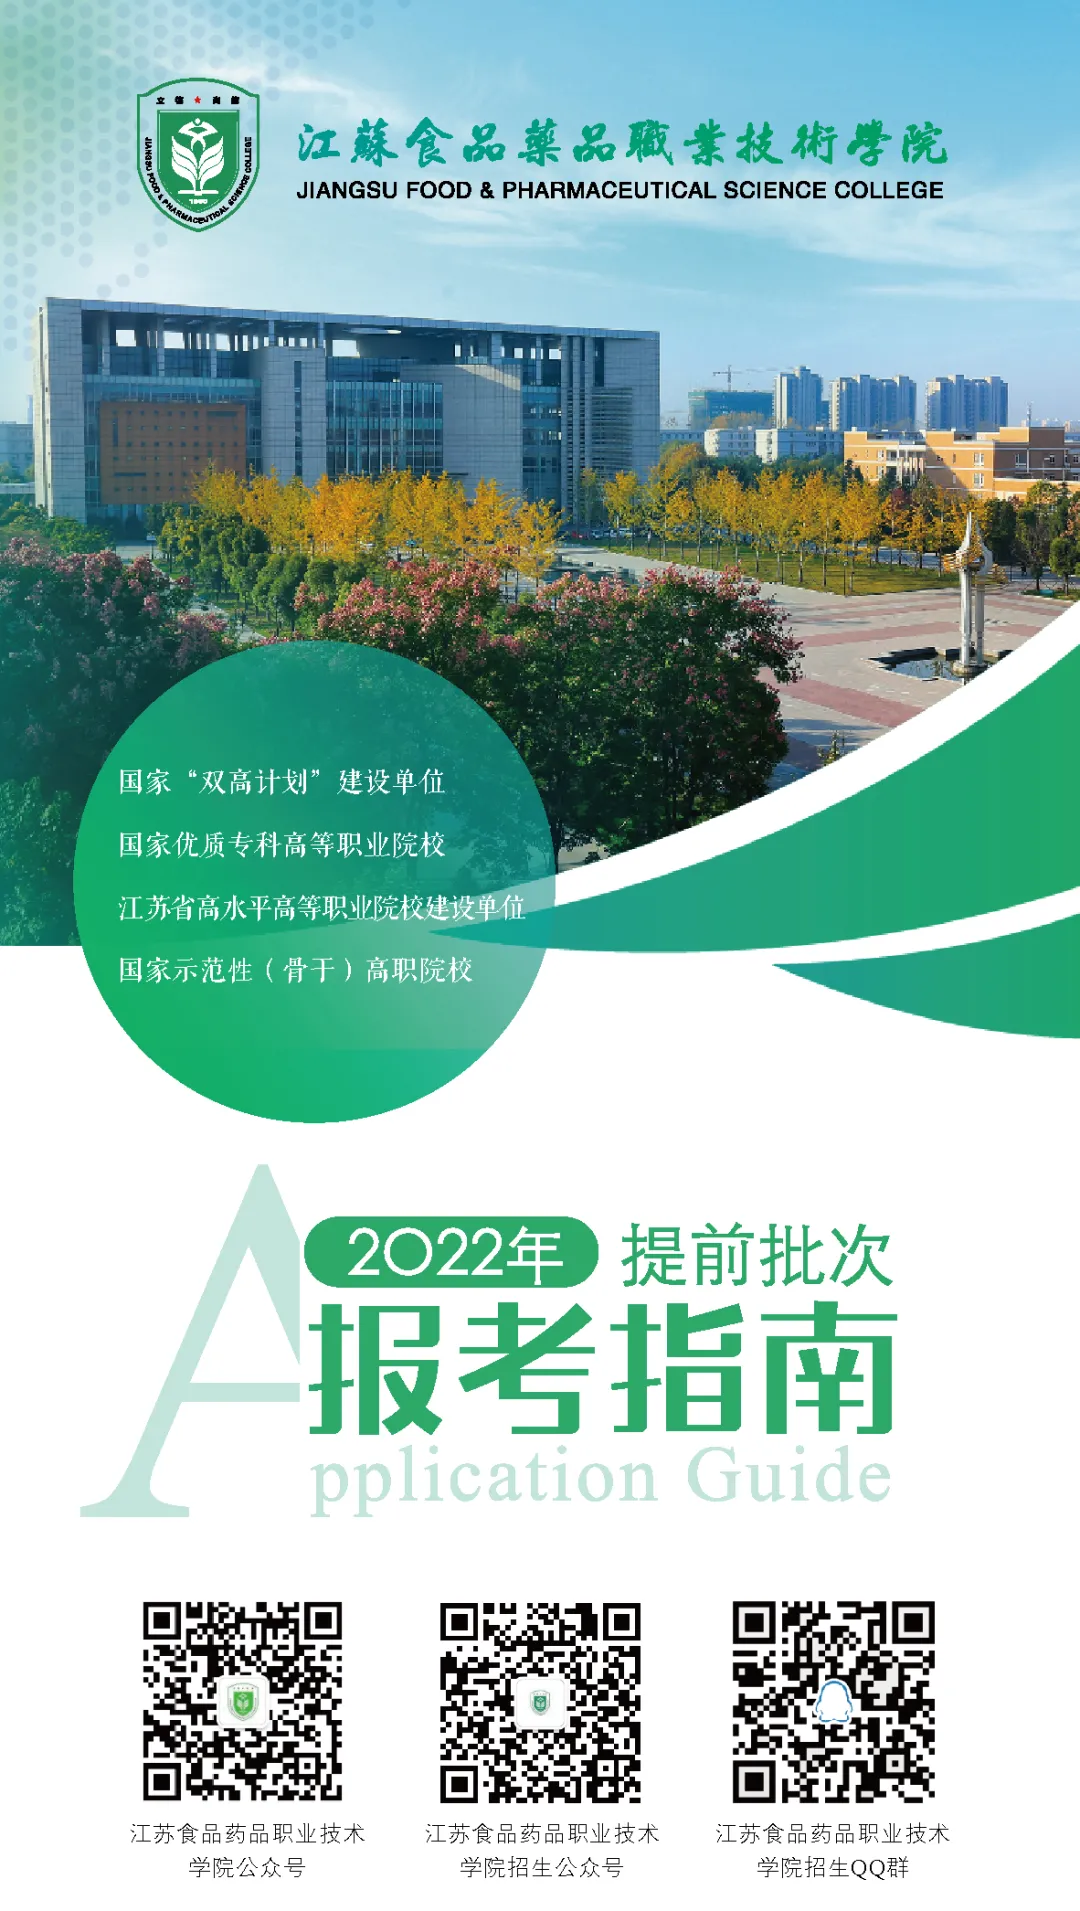 江苏食品药品职业技术学院2022年提前招生报考指南